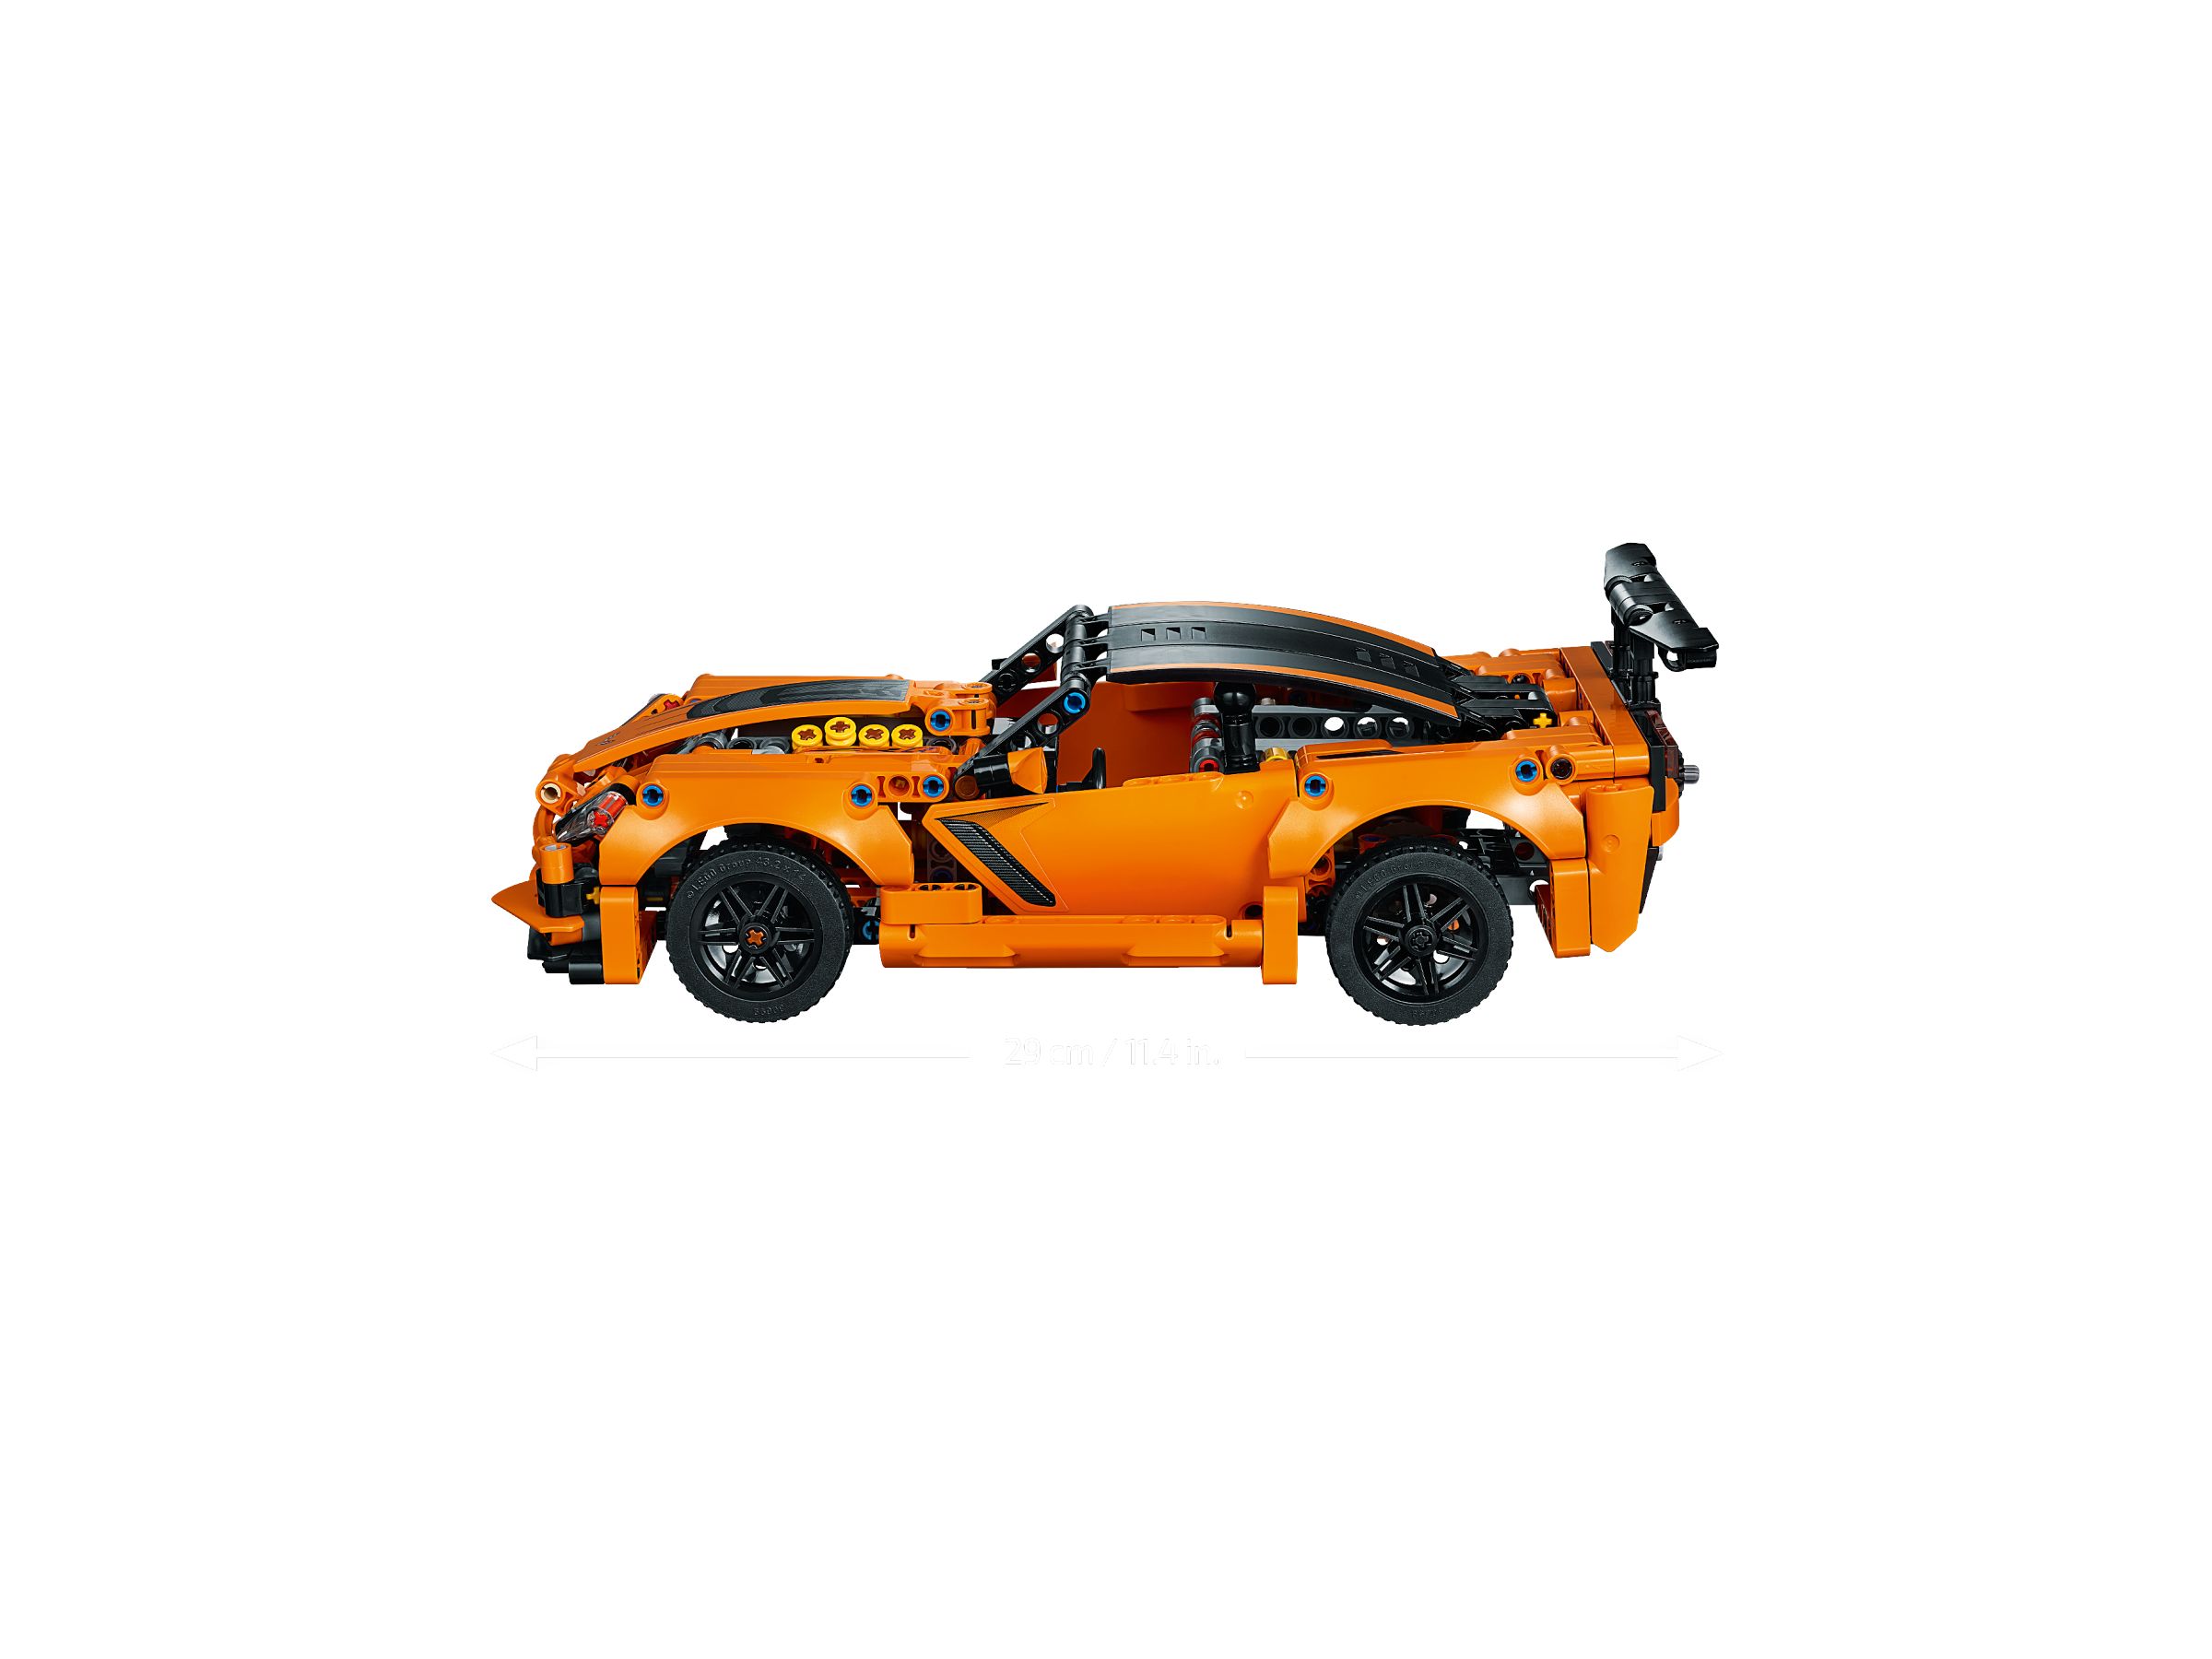 LEGO Technic 42093 Chevrolet Corvette ZR1 LEGO_42093_alt3.jpg